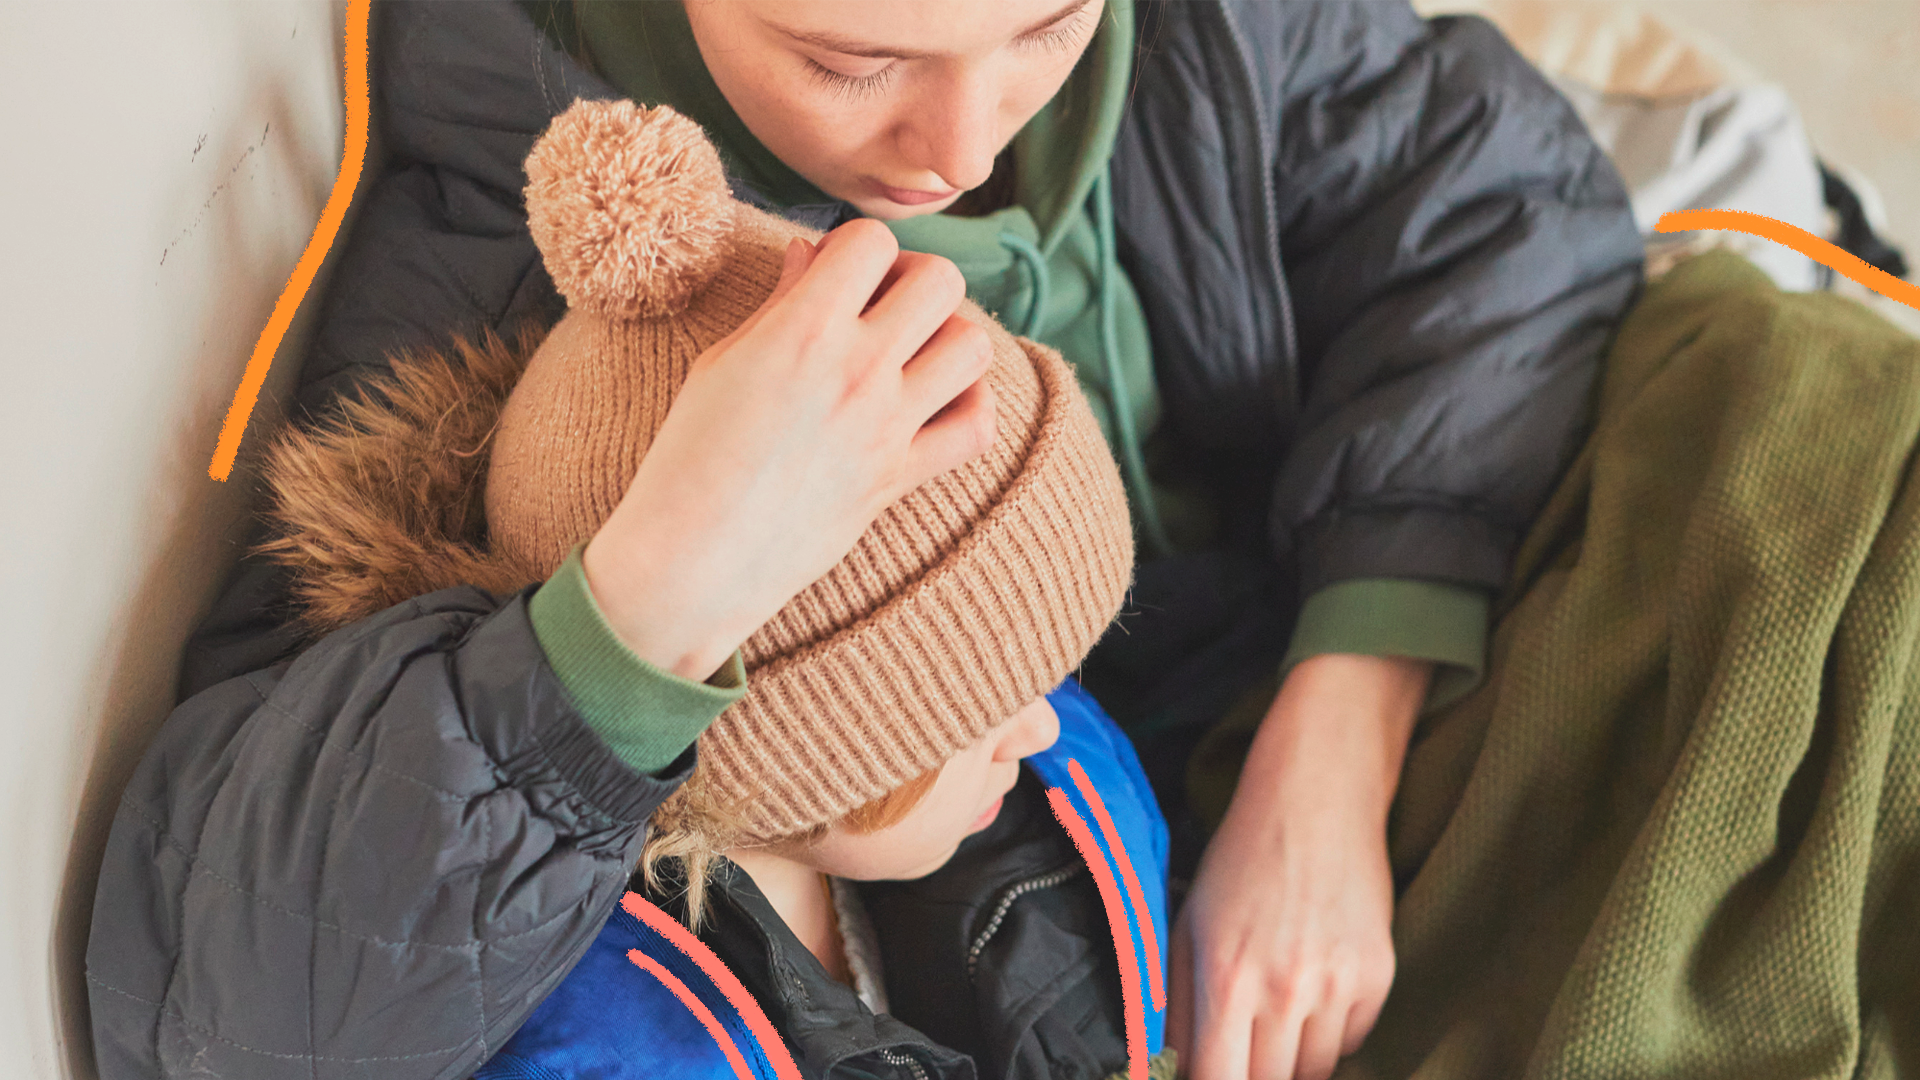 imagem de capa para matéria sobre como proteger as crianças nos abrigos do RS mostra uma mulher ventindo roupas de frio abraçando uma criança, menino branco com touca de frio. Ambos estão sentados.